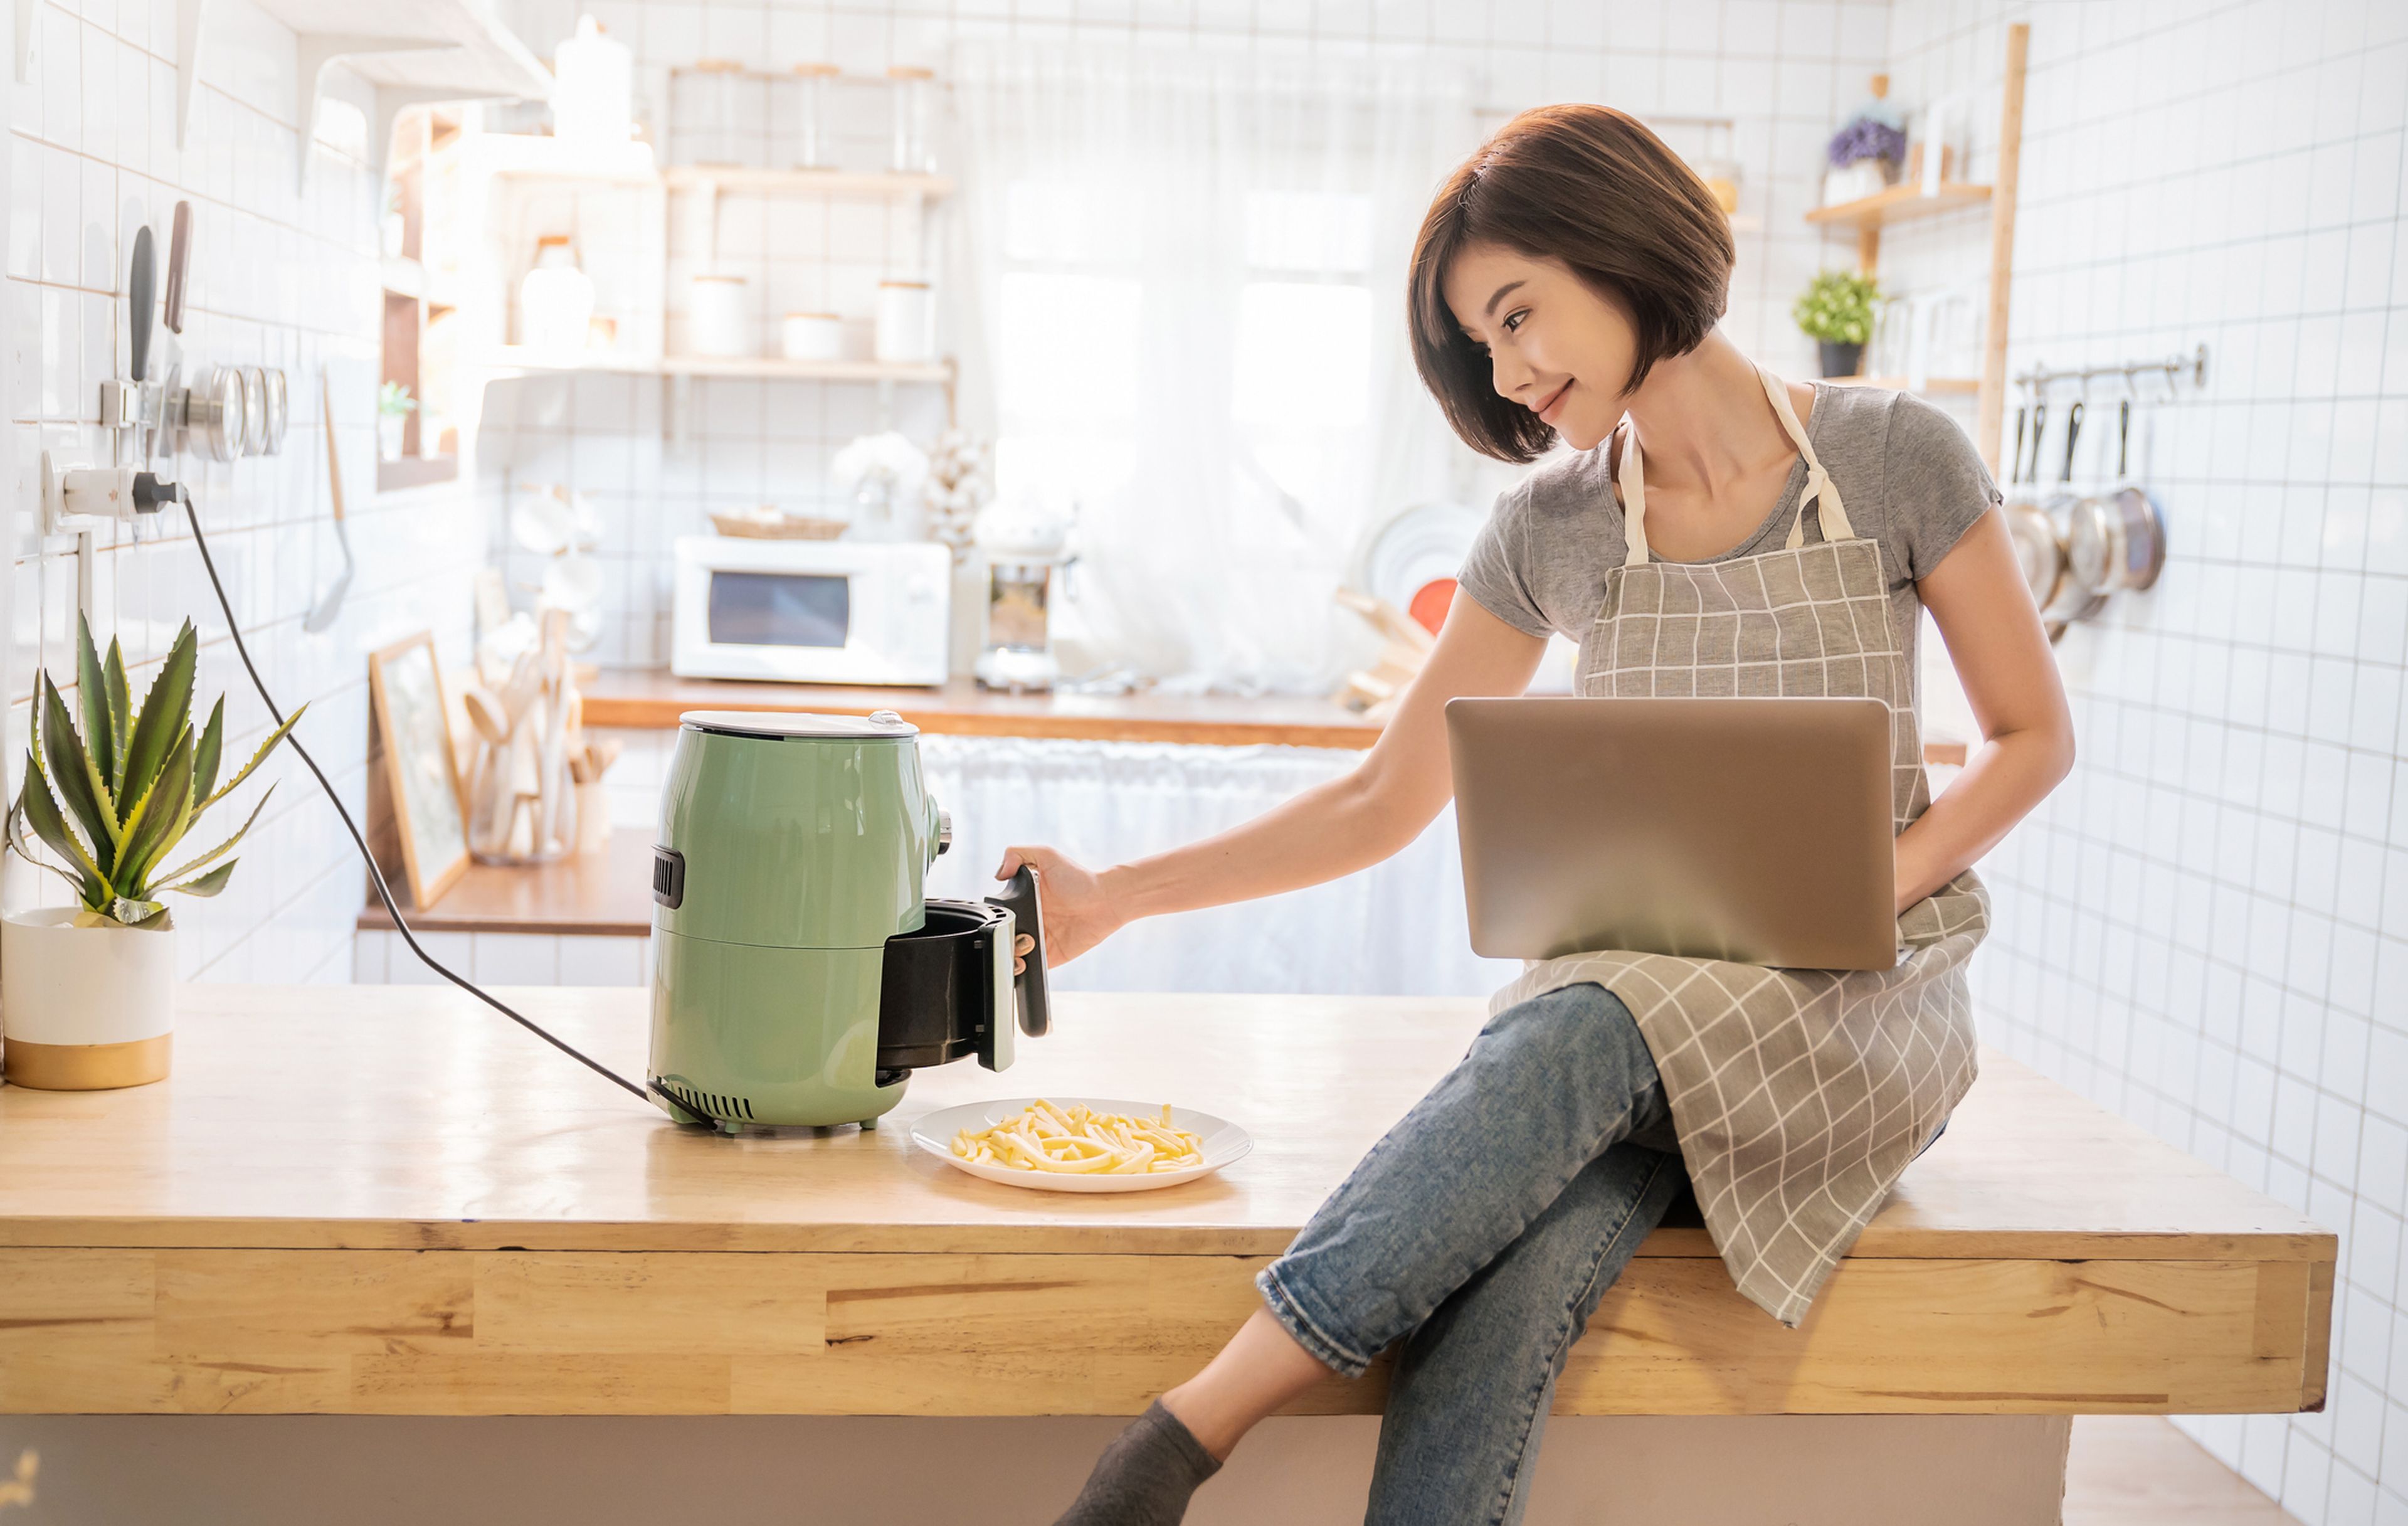 Una mujer con el ordenador, mientras cocina patatas en un robot.